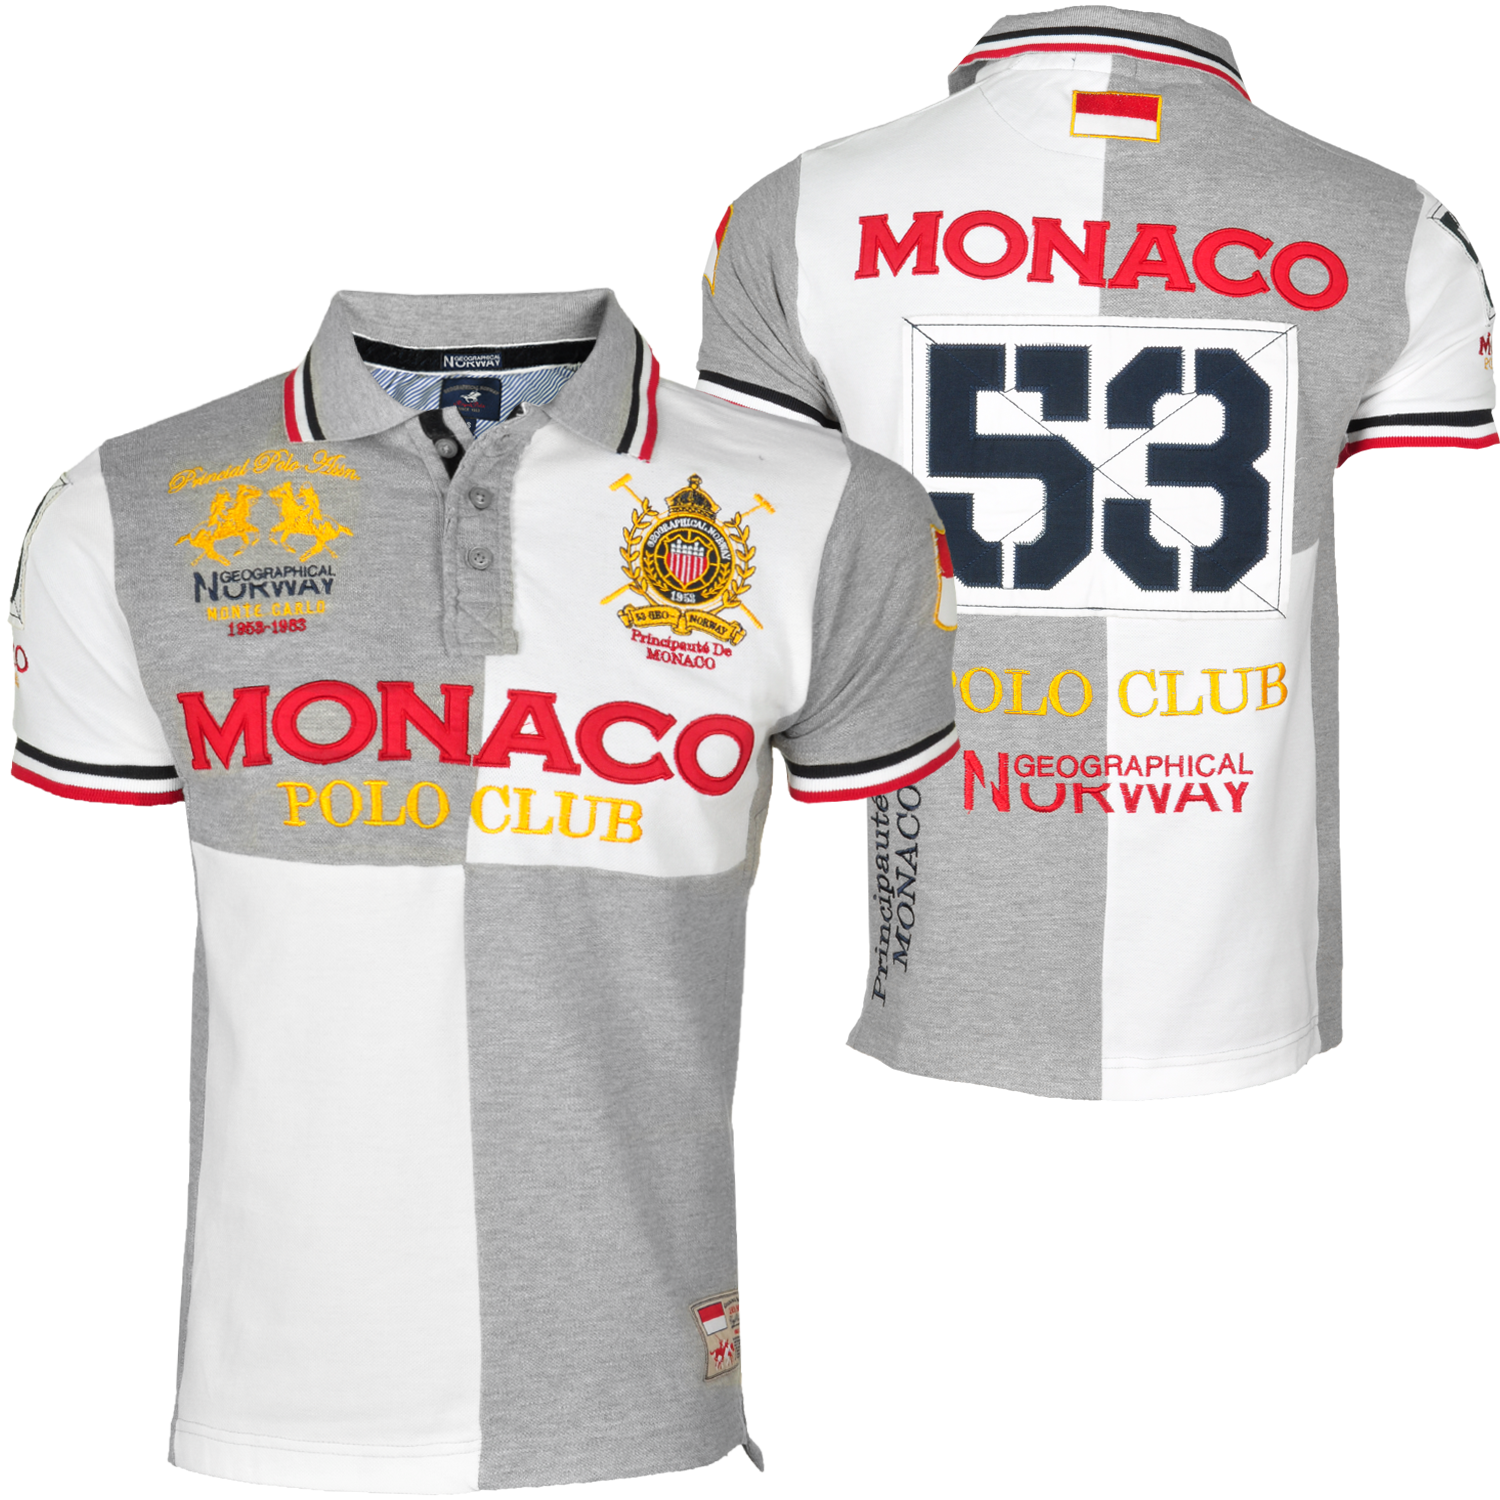 Foto Geographical Norway Monaco Polo Club Camiseta Polo Gris foto 149570